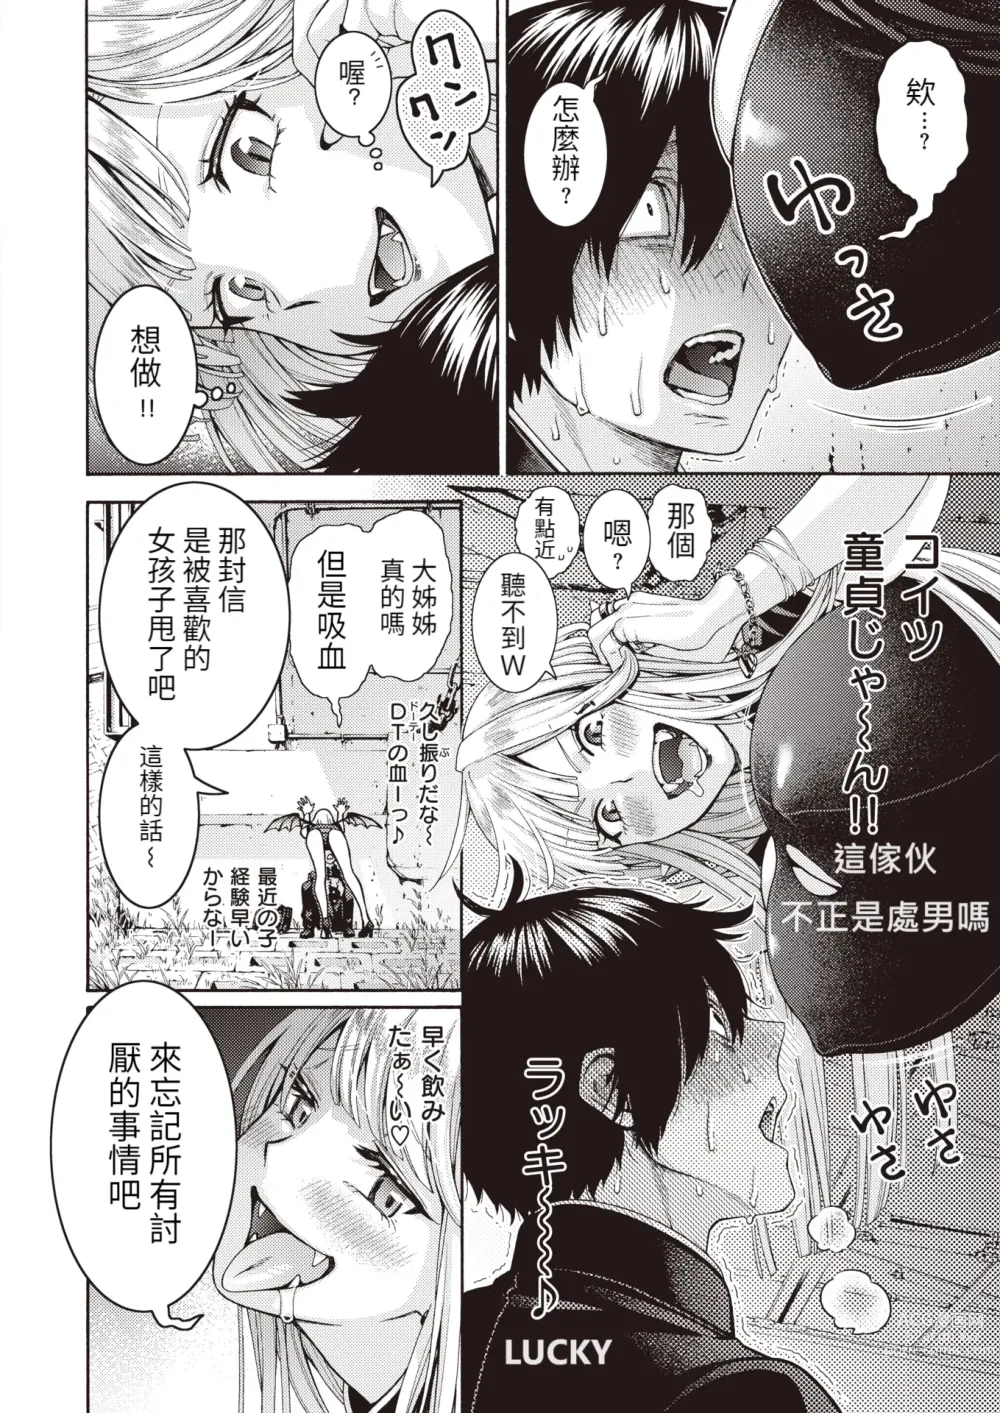 Page 4 of manga Onna Kyuuketsuki to DT Monogatari